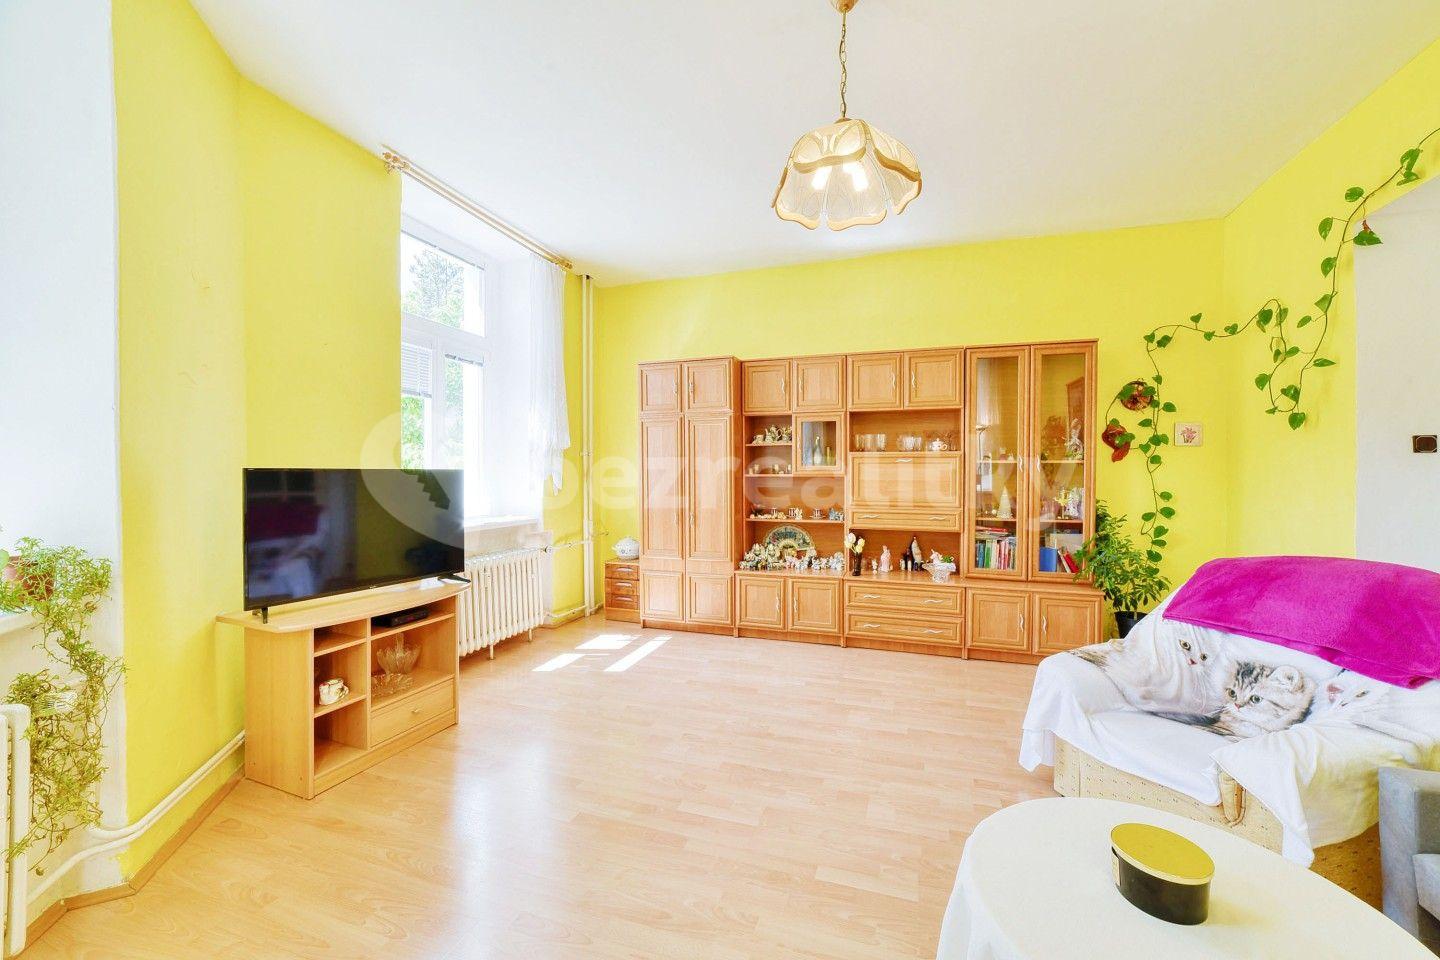 3 bedroom flat for sale, 84 m², Karlovarská, Mariánské Lázně, Karlovarský Region